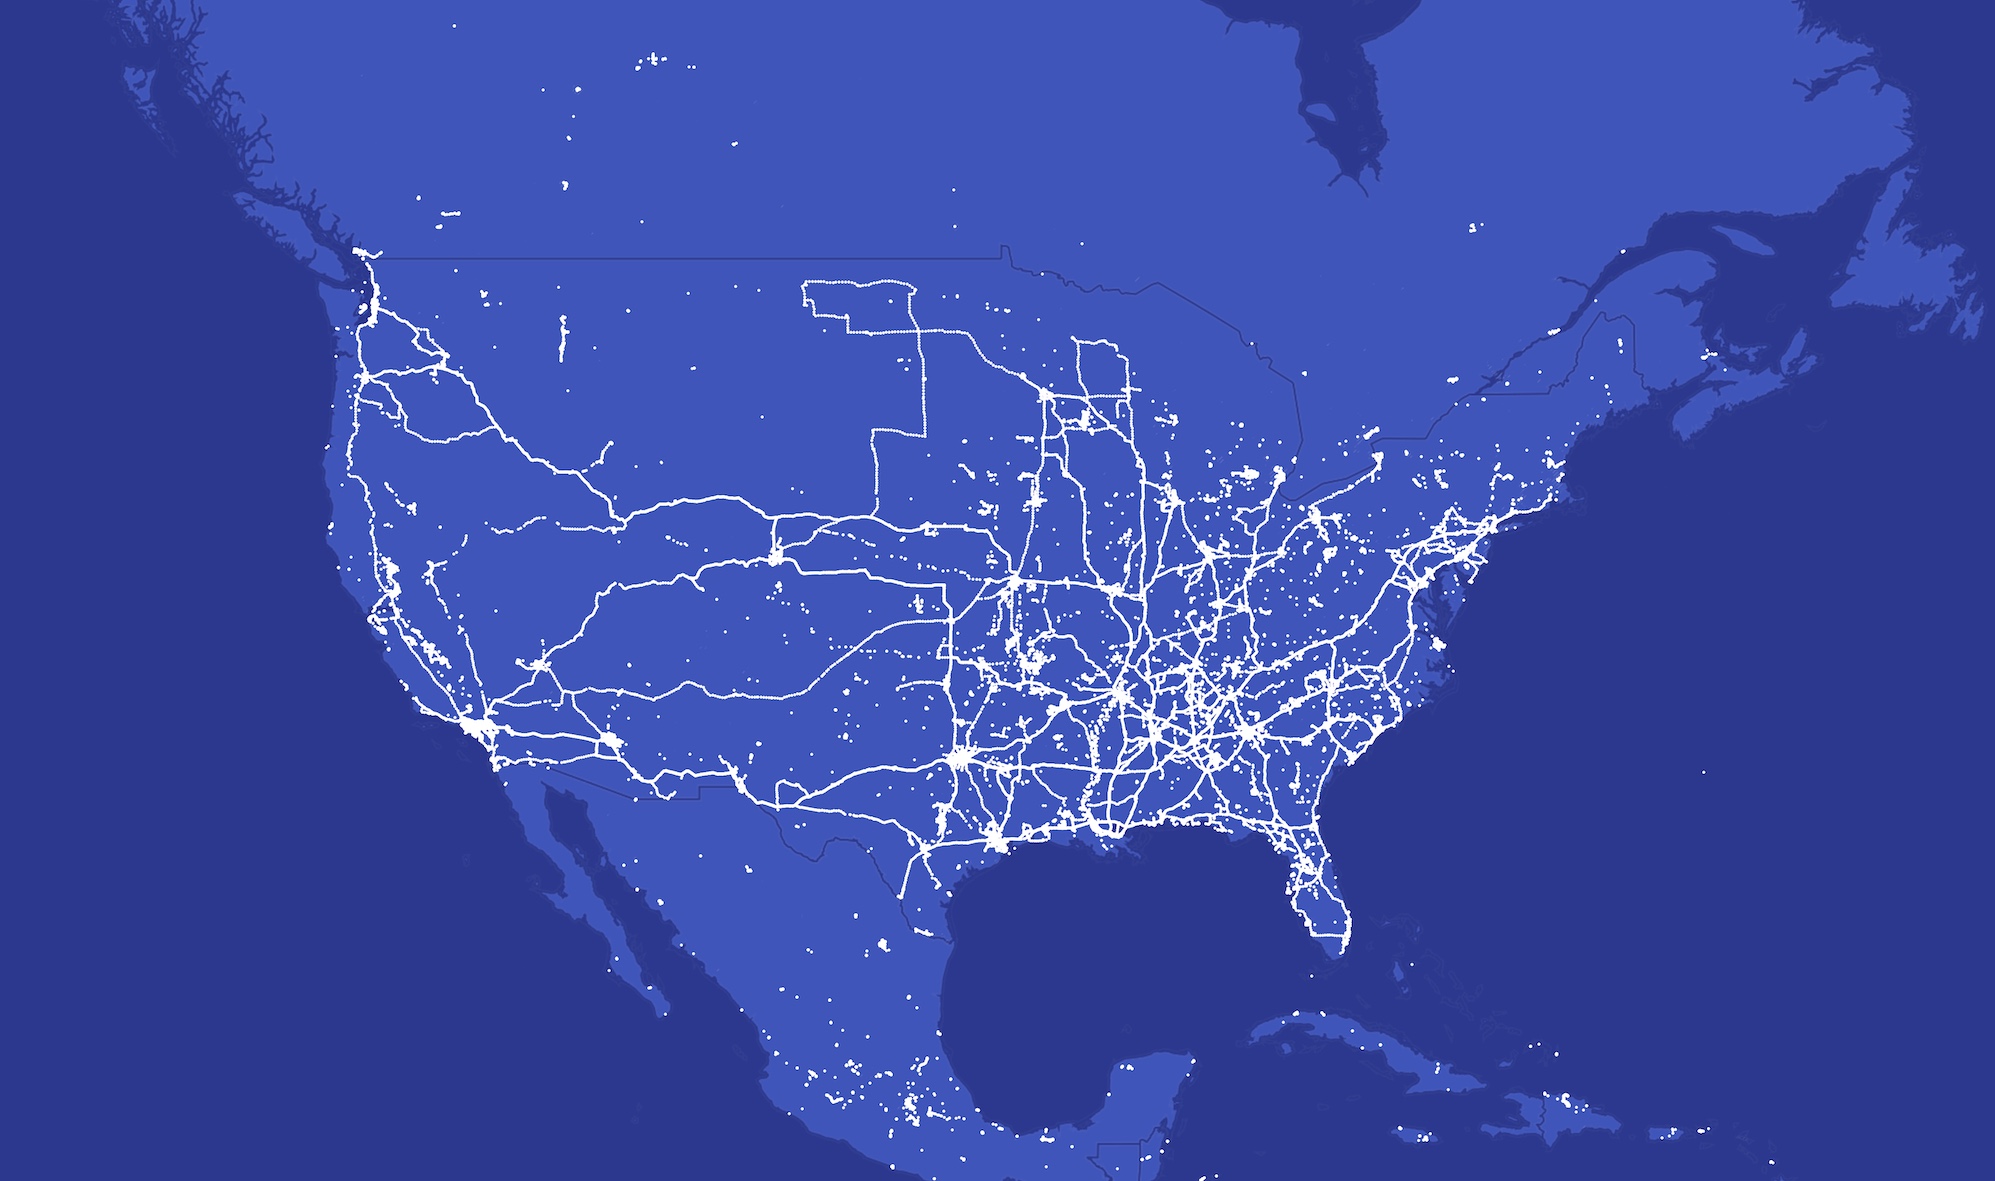 تم عرض الملايين من نقاط بيانات الموقع على خريطة زرقاء للولايات المتحدة